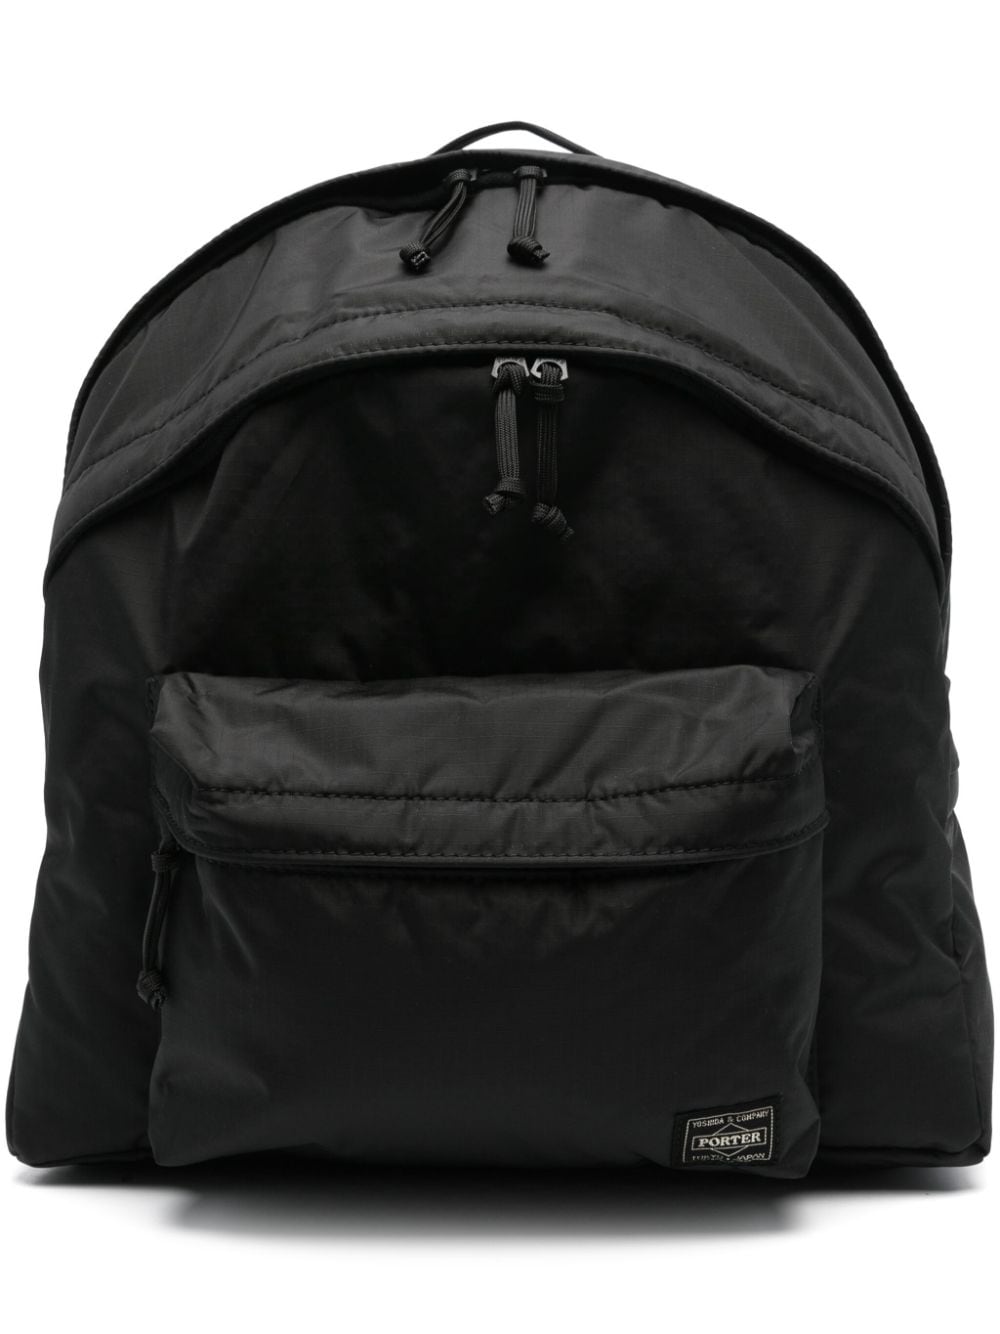 Porter PORTER- Limited To Kura Chika Backpack